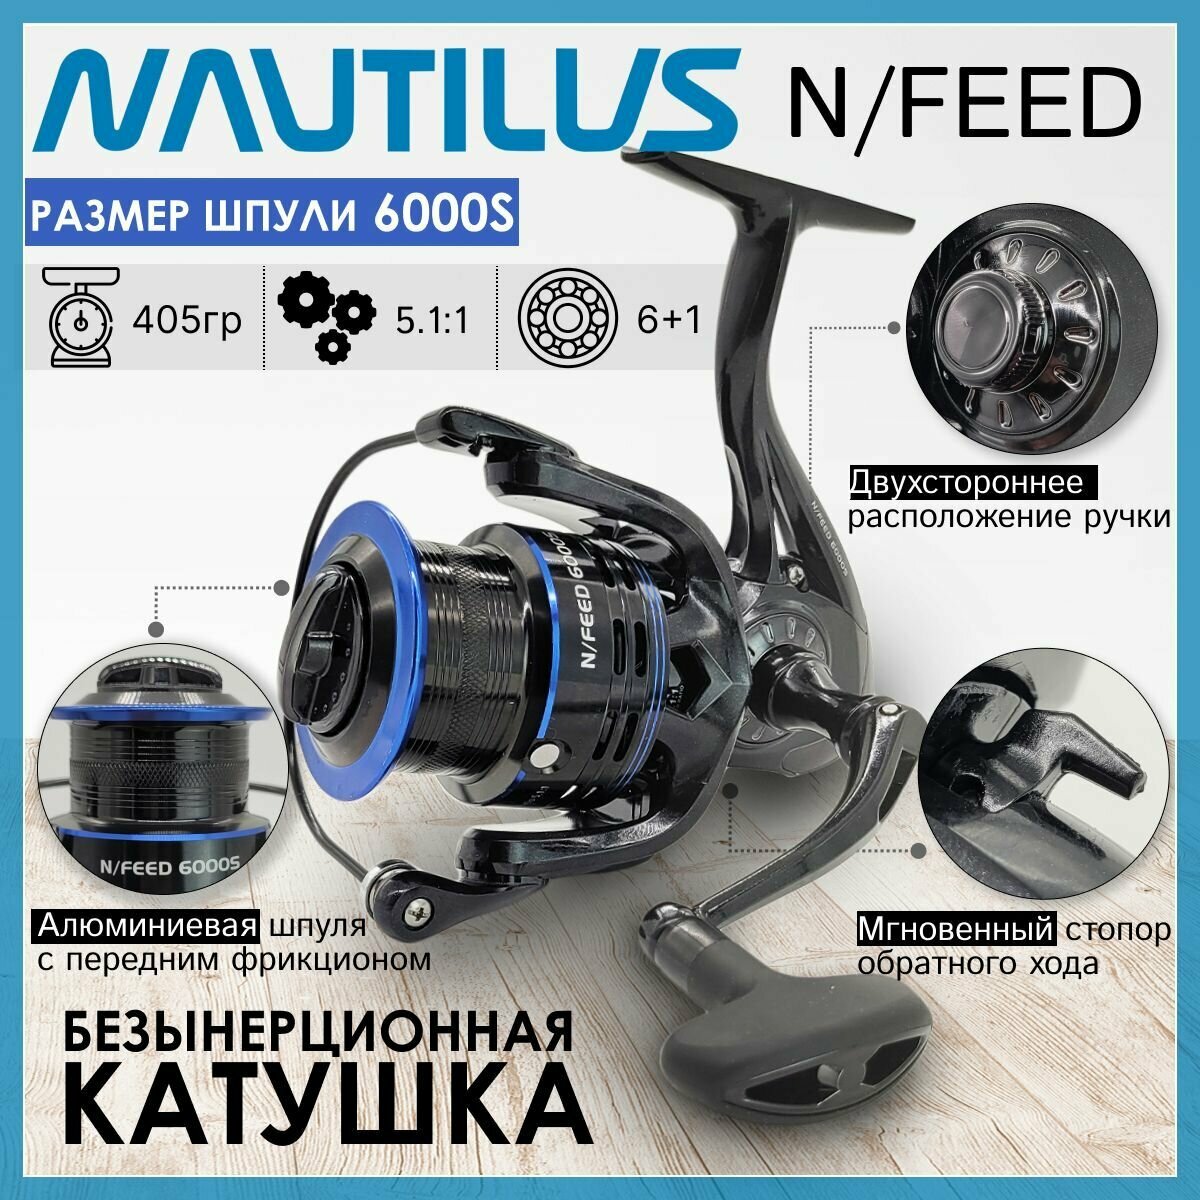 Катушка Nautilus N/FEED 6000S с передним фрикционом